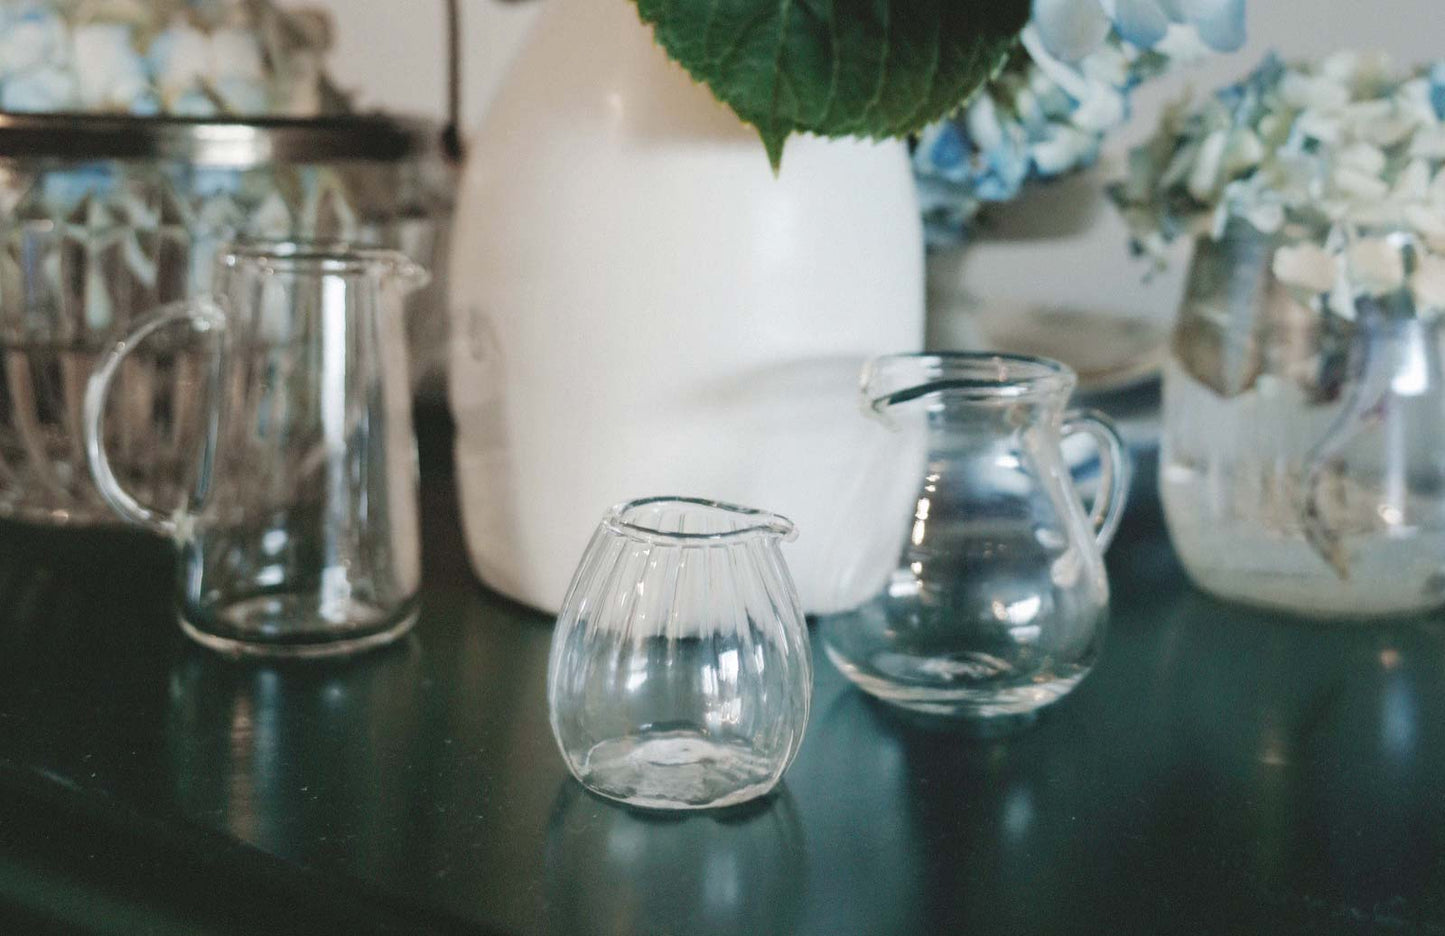 Handmade Mini Glass Milk Pitcher/Vase Set